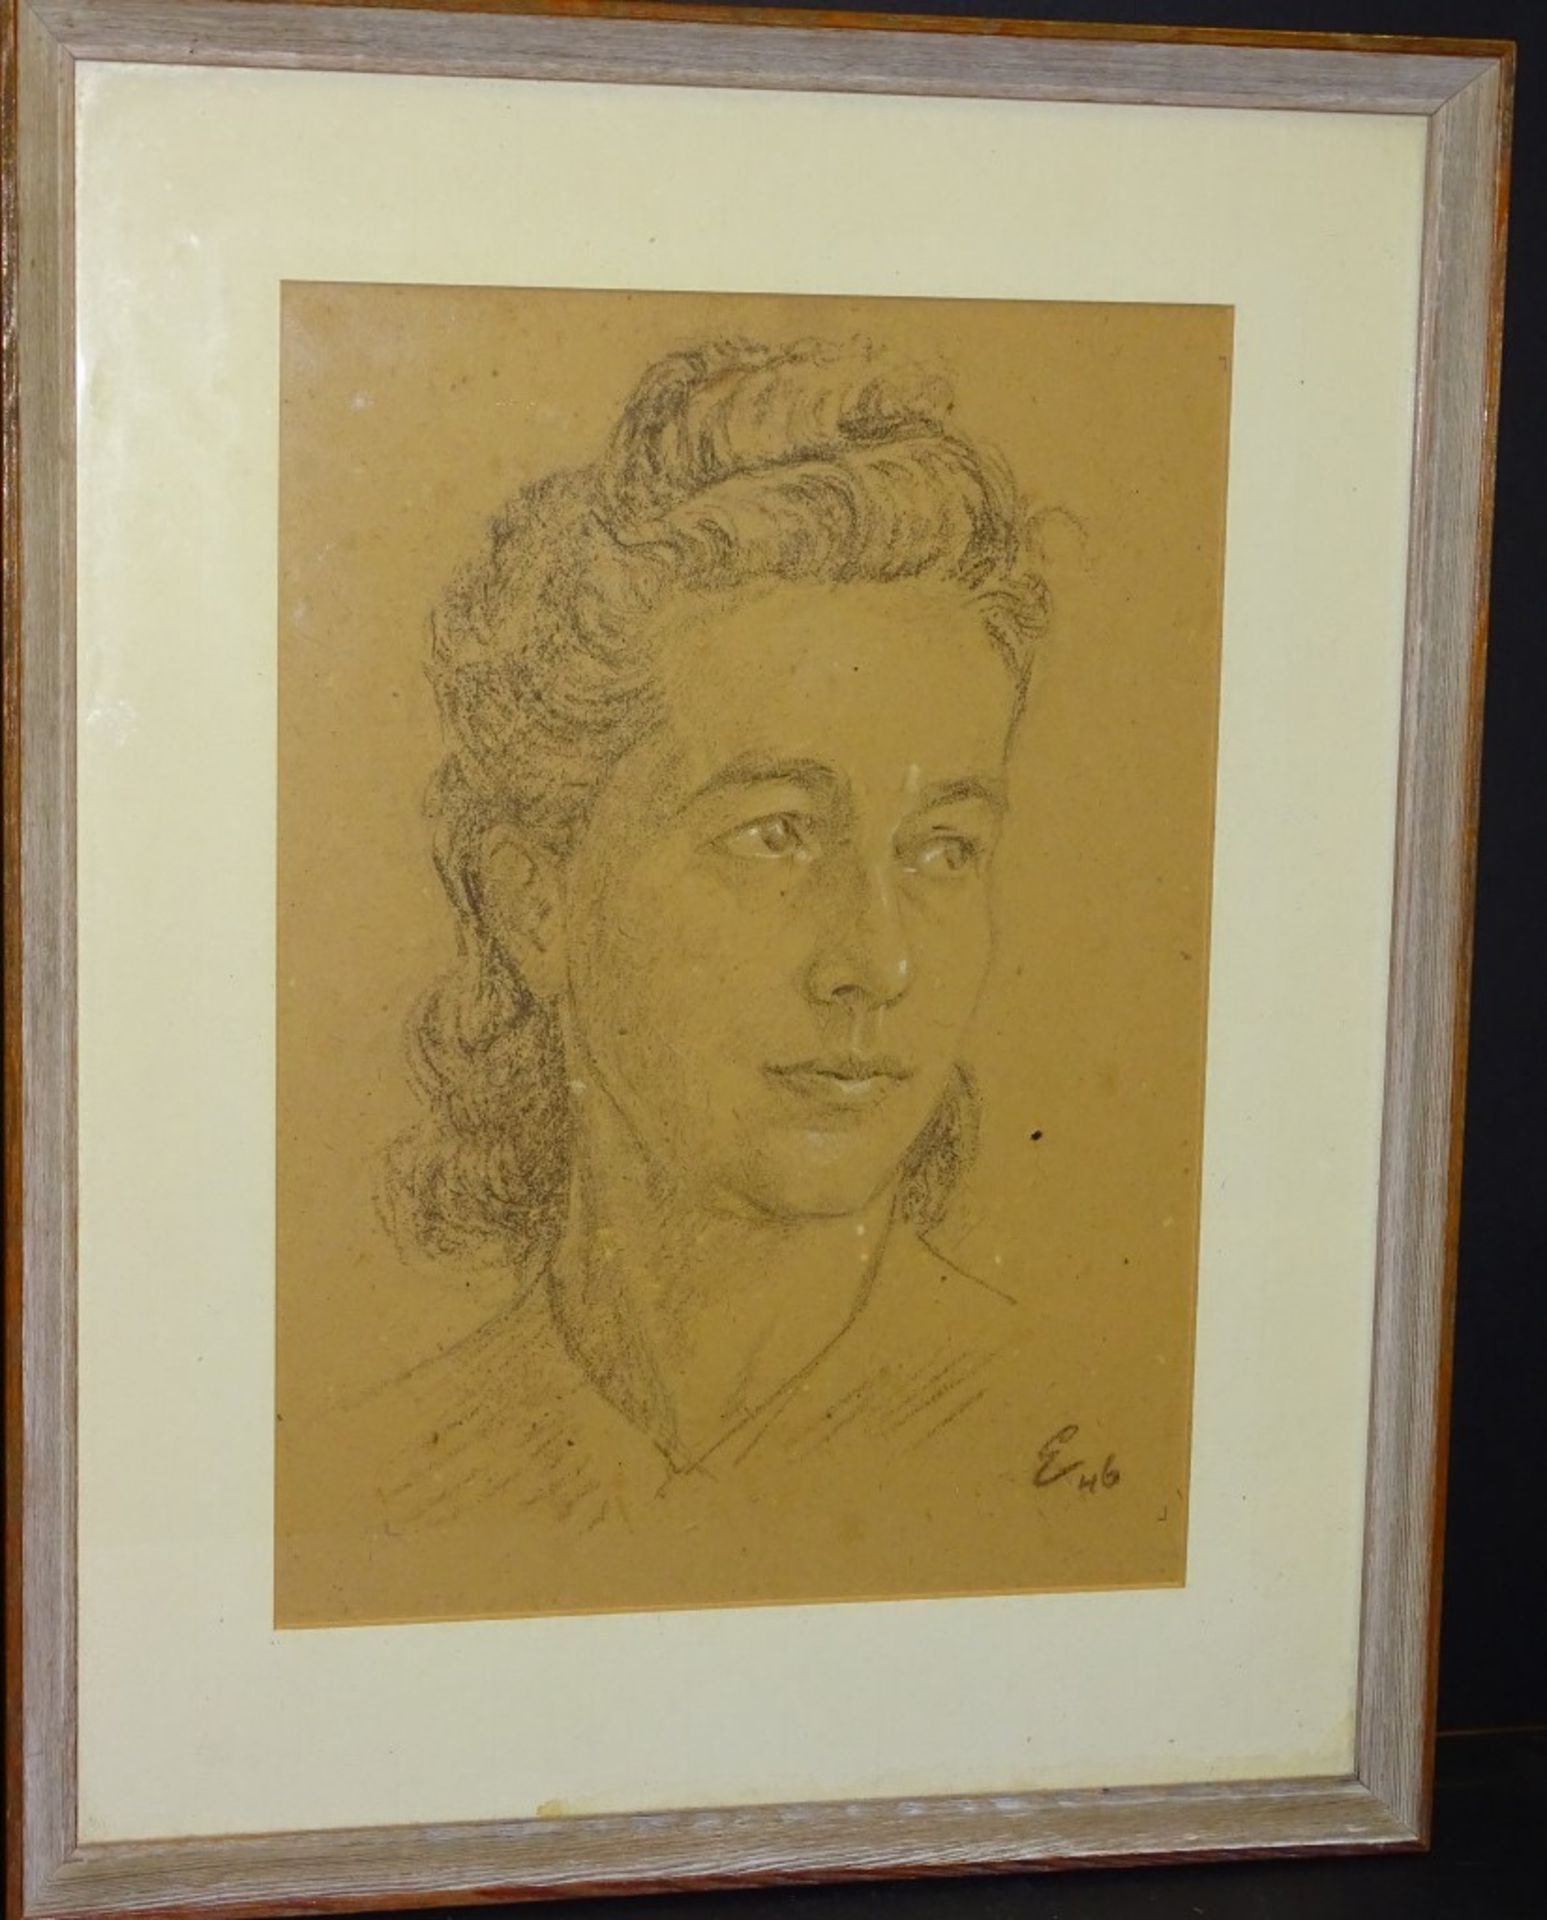 Zeichnung-Frauenportrait,u.r.Monogramm und Datierung (19)46,Gesicht weiss gehöht,ger/Glas,RG 49x39c - Image 3 of 6